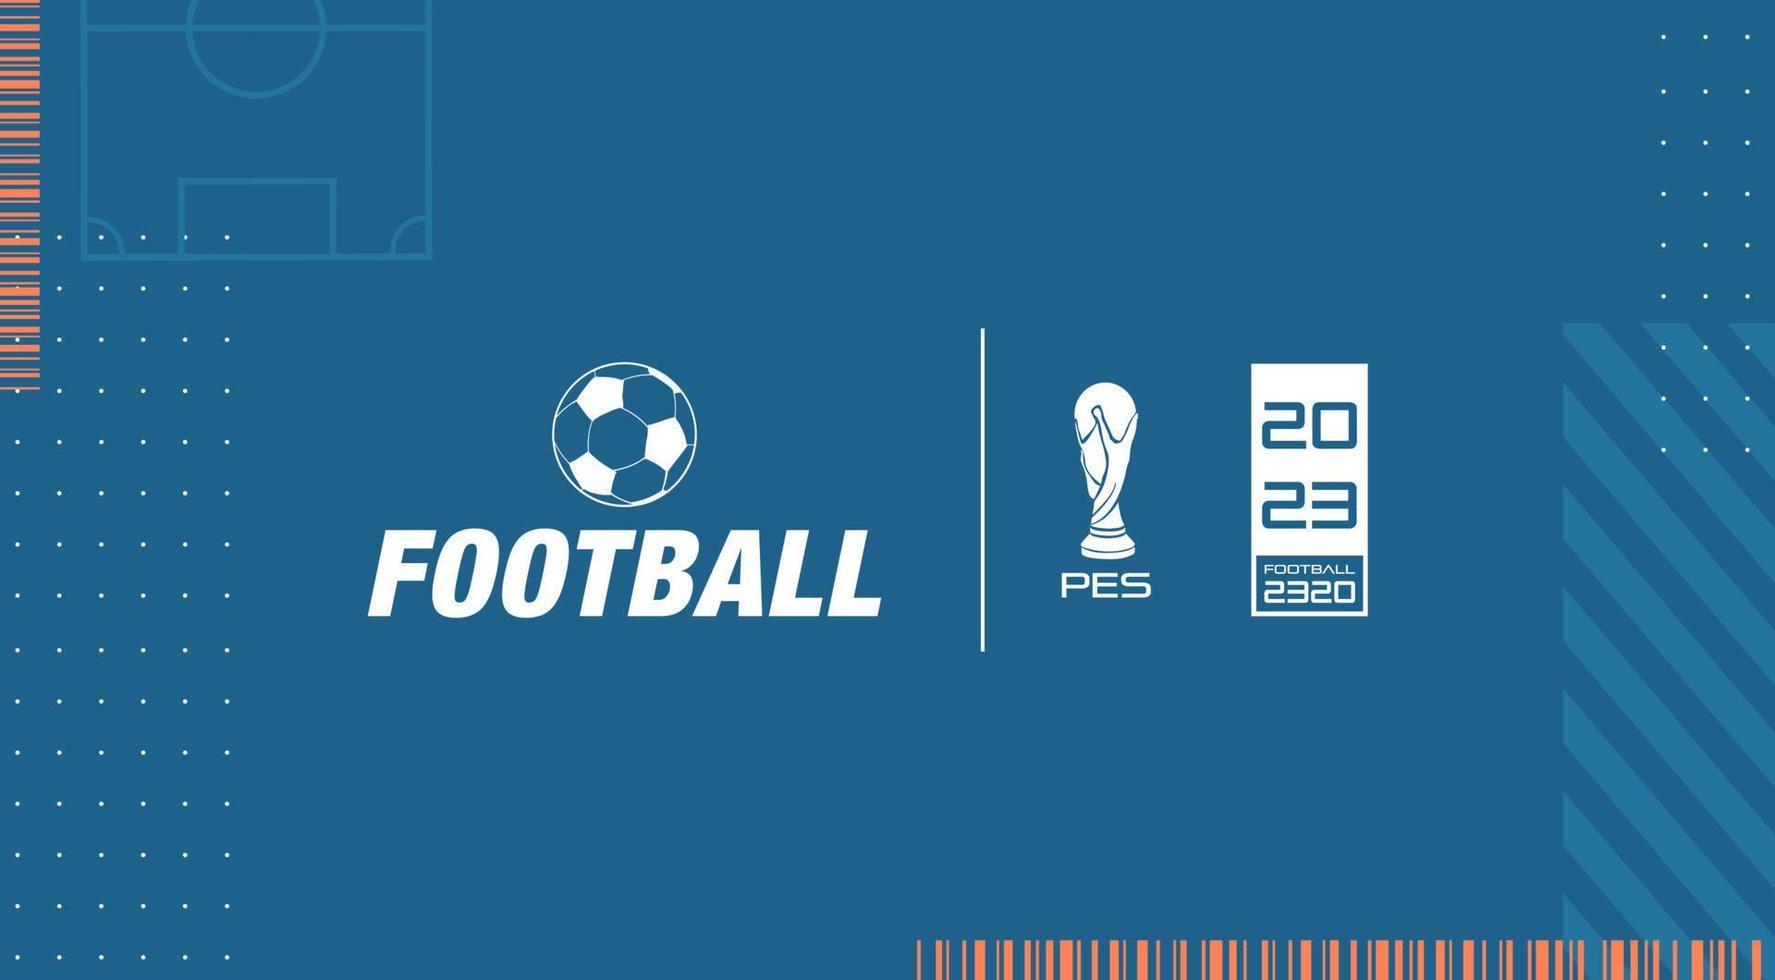 futuristisches abstraktes Schlüsselbild. Banner mit Fußballplatz, Mustern und Symbolen, die von Fußballvideospielen inspiriert sind. Menübildschirm für Sportvideospiele. vektor